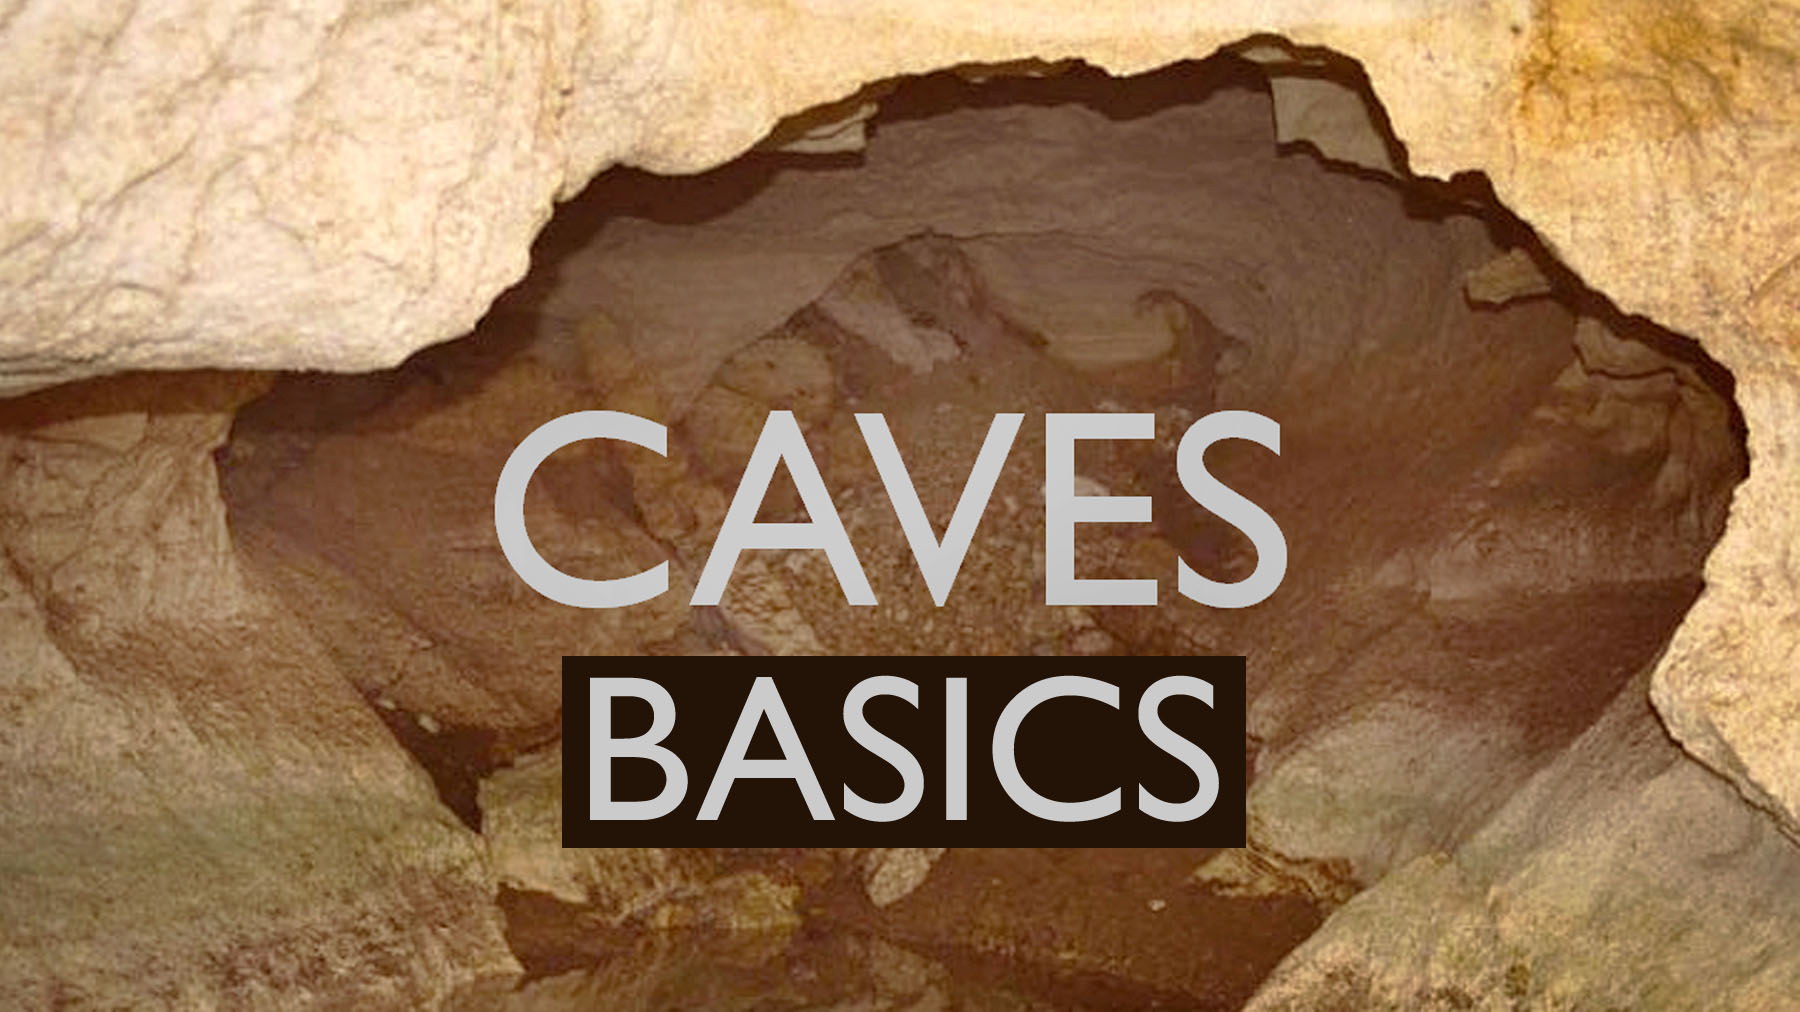 Caves basics